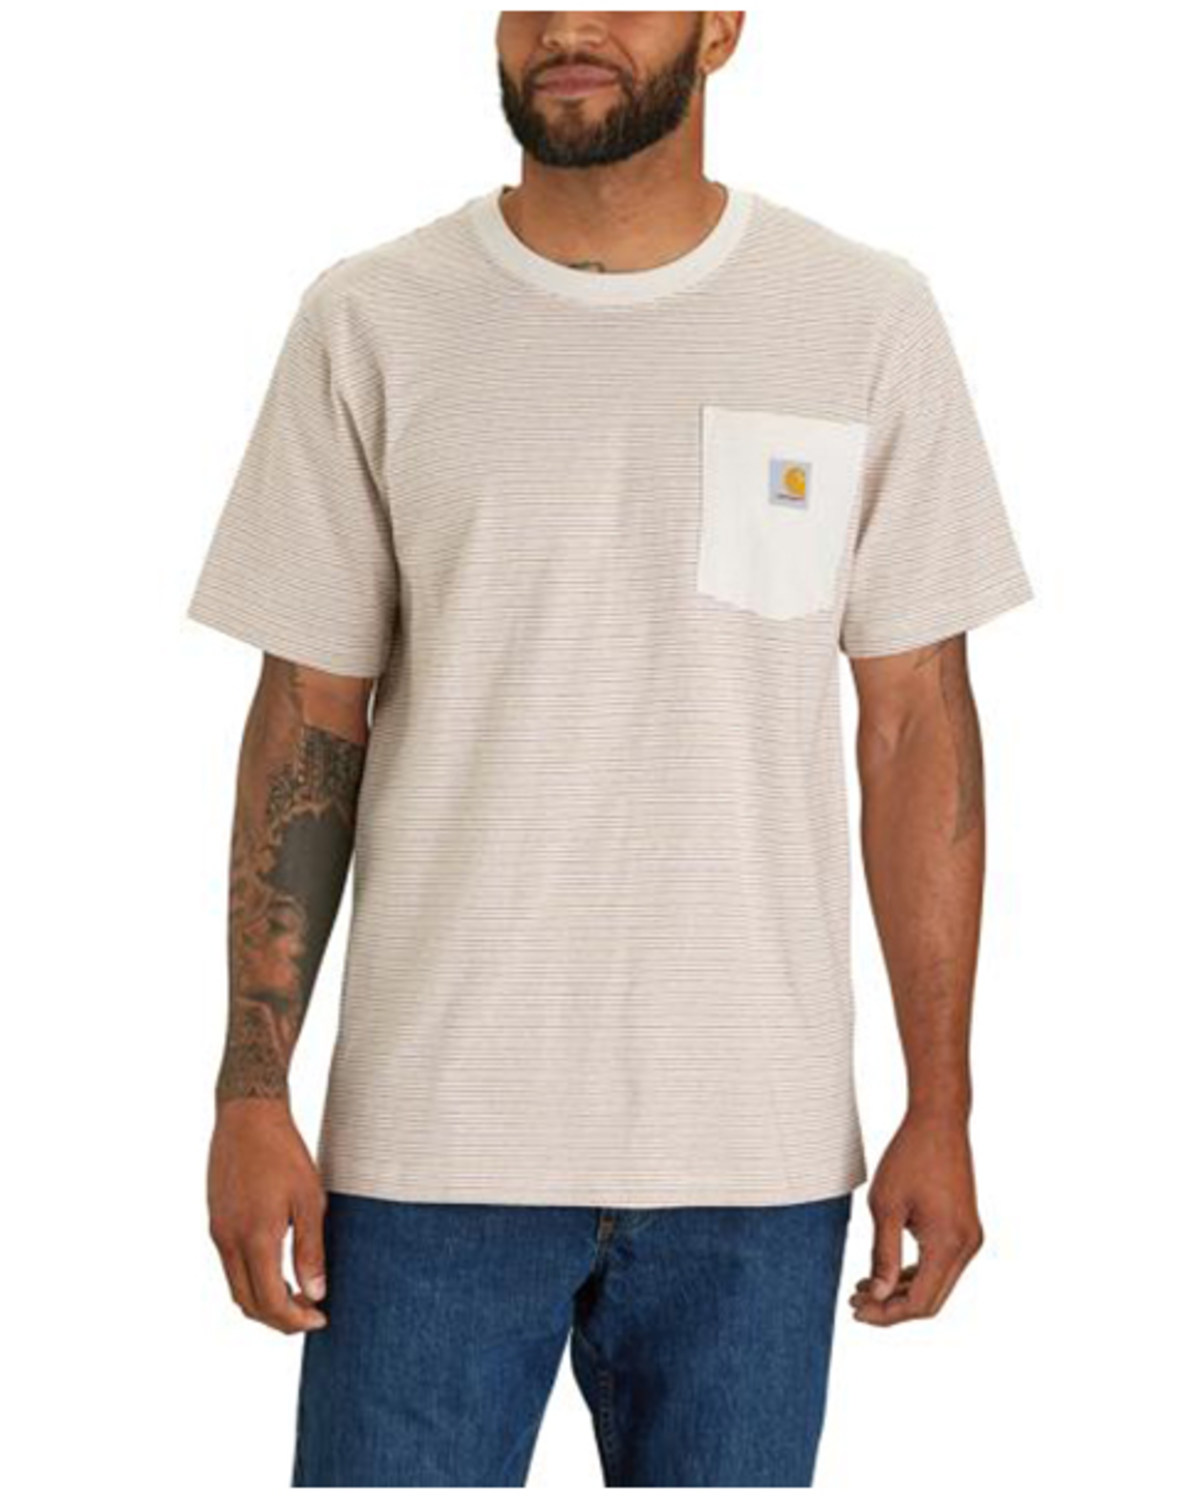 Carhartt Men's Striped Print Relaxed Fit Heavyweight Short Sleeve Pocket T-Shirt